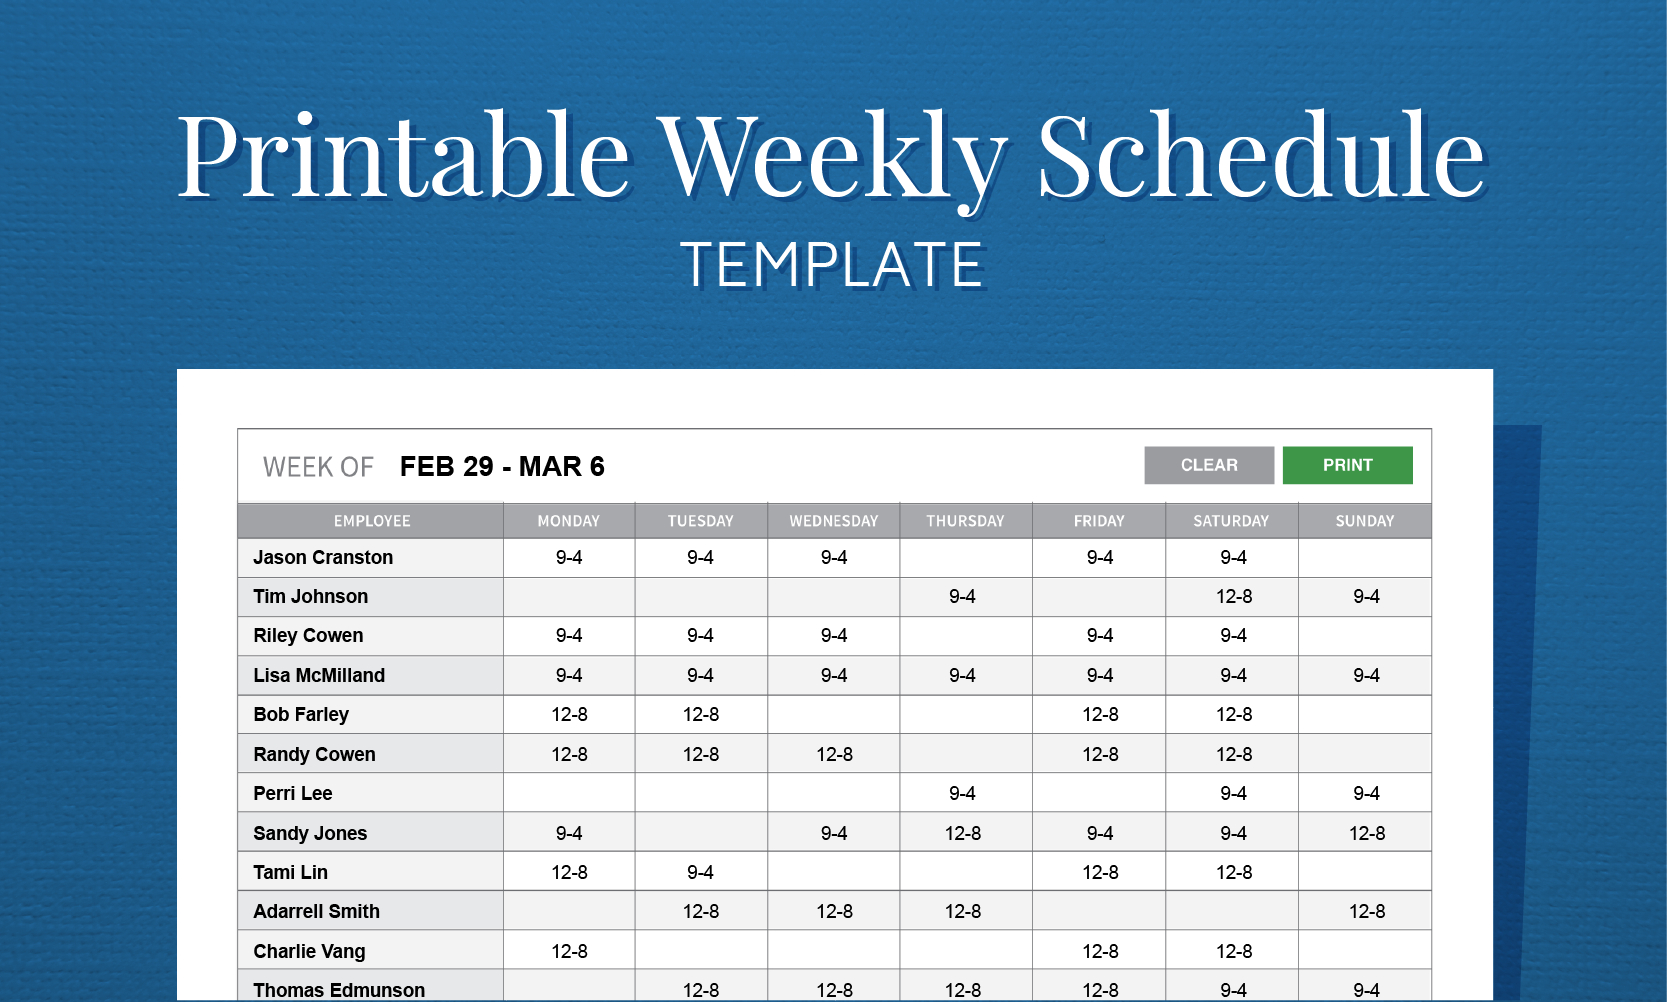 Free Printable Weekly Work Schedule Template For Employee Scheduling Throughout Employee Schedule Format